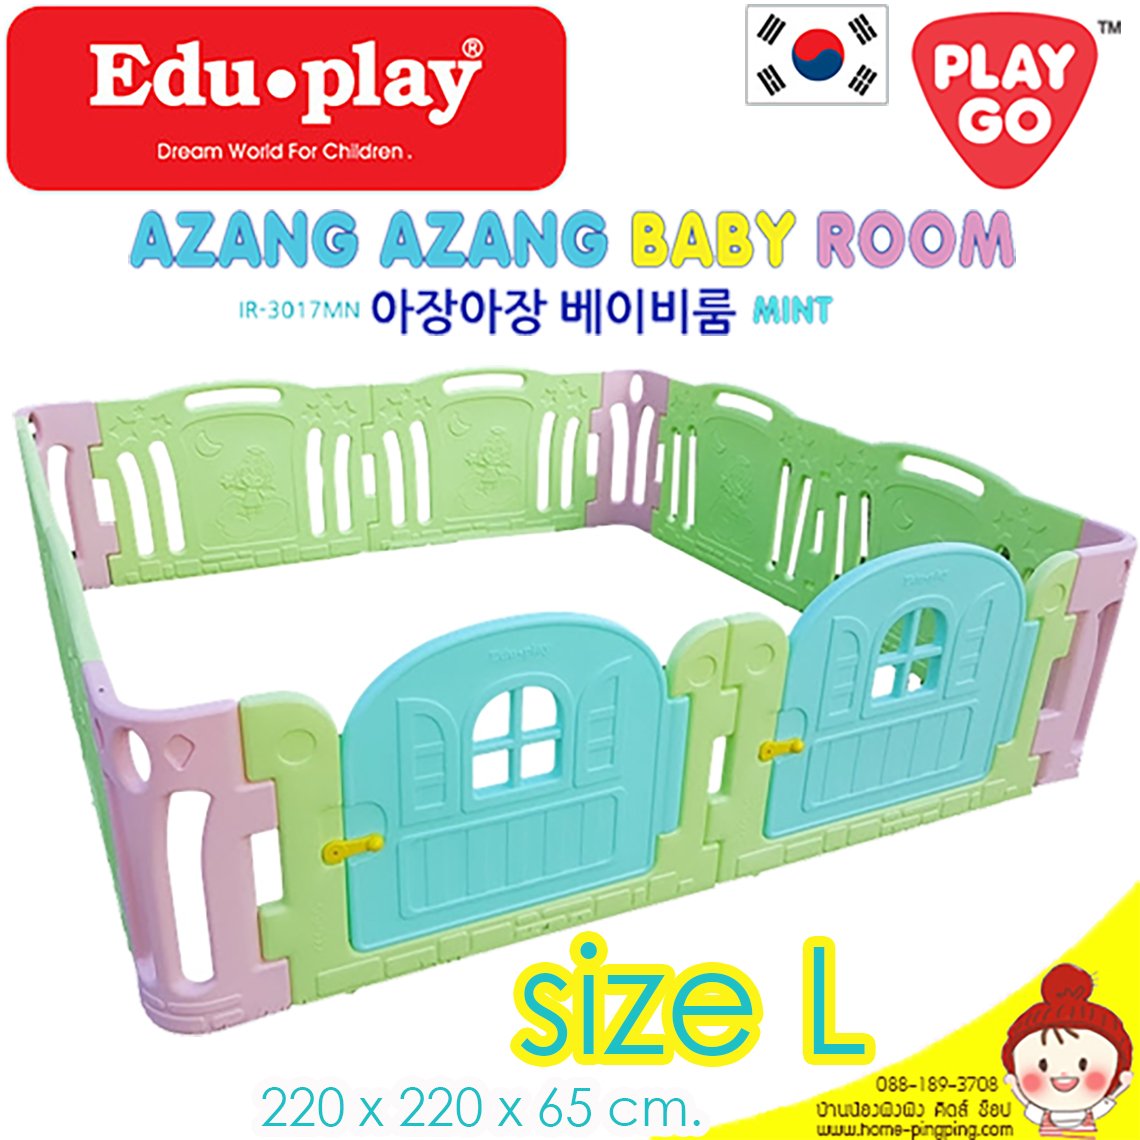 คอกกั้น Edu Play เกาหลี รุ่น Azang สีเขียว [Sx2 =L-2door] ขนาด 220*220*65 ซม. ยี่ห้อ EDU Play